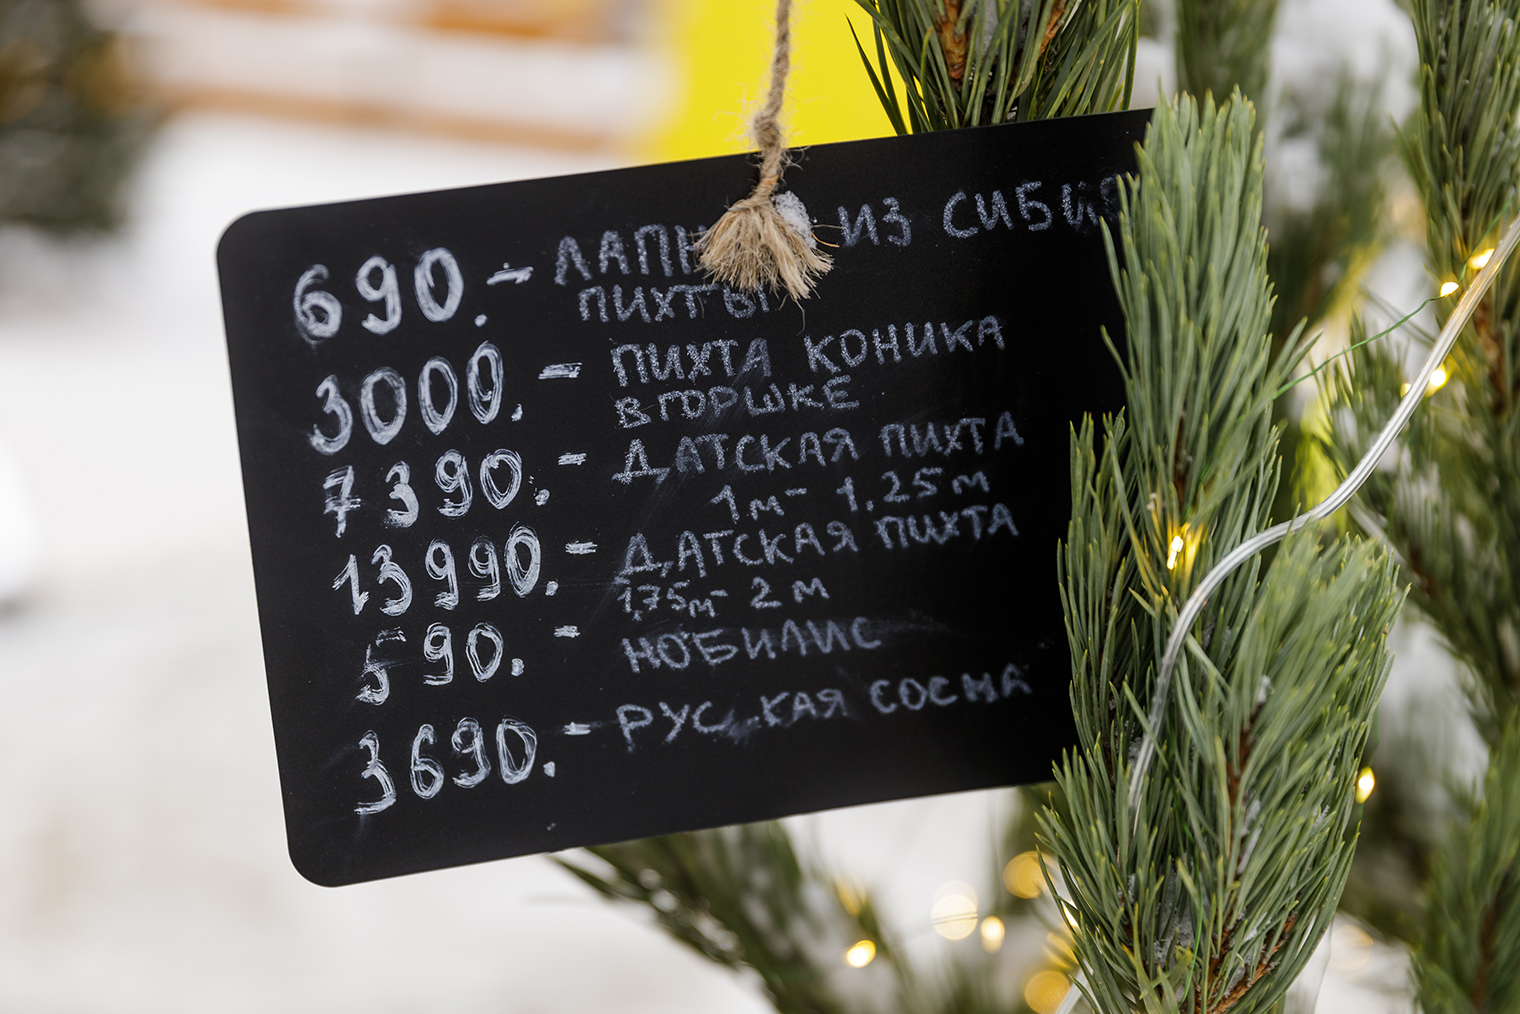 Цены на деревья на новогодней ярмарке